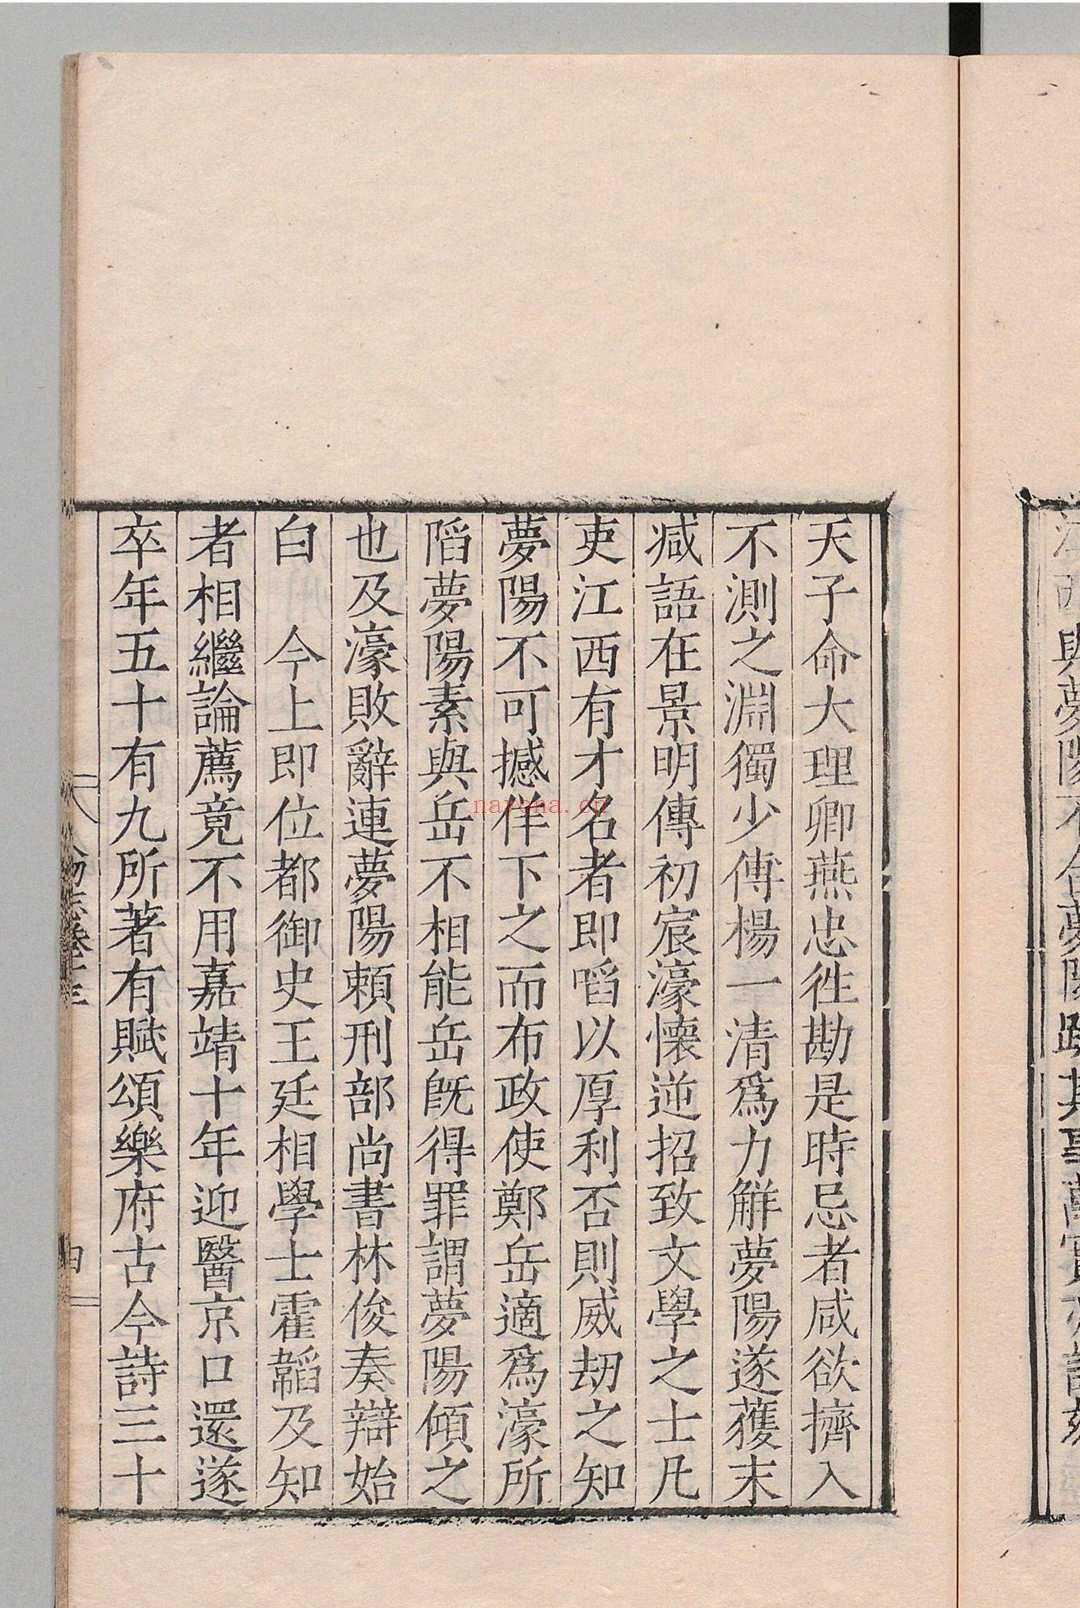 皇朝中州人物志 16卷 朱睦 明隆庆2年